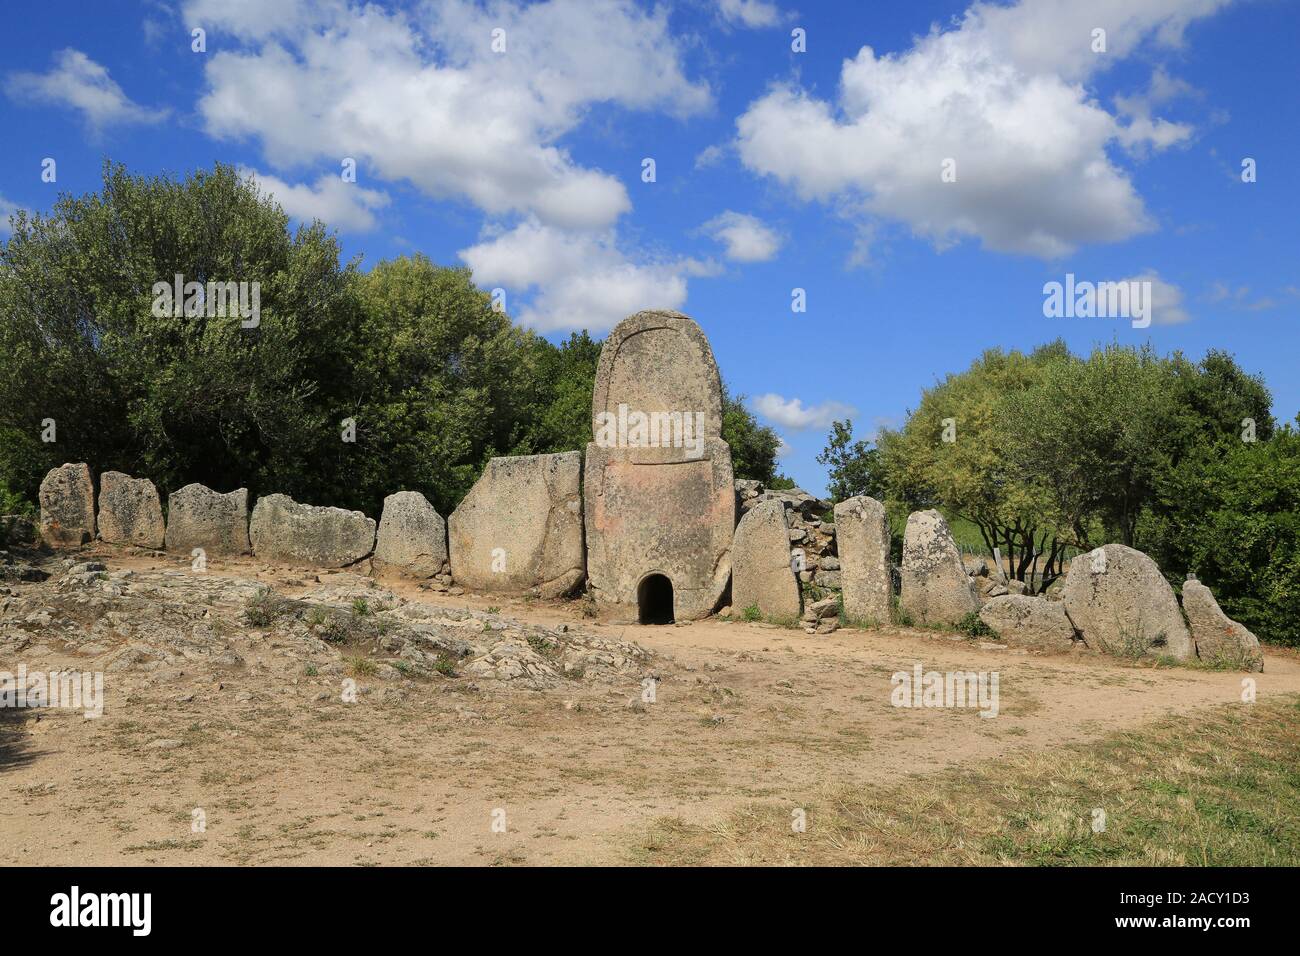 Grave mound in Sardinia near Coddu Vecchiu, the Tomba di Giganti. Stock Photo